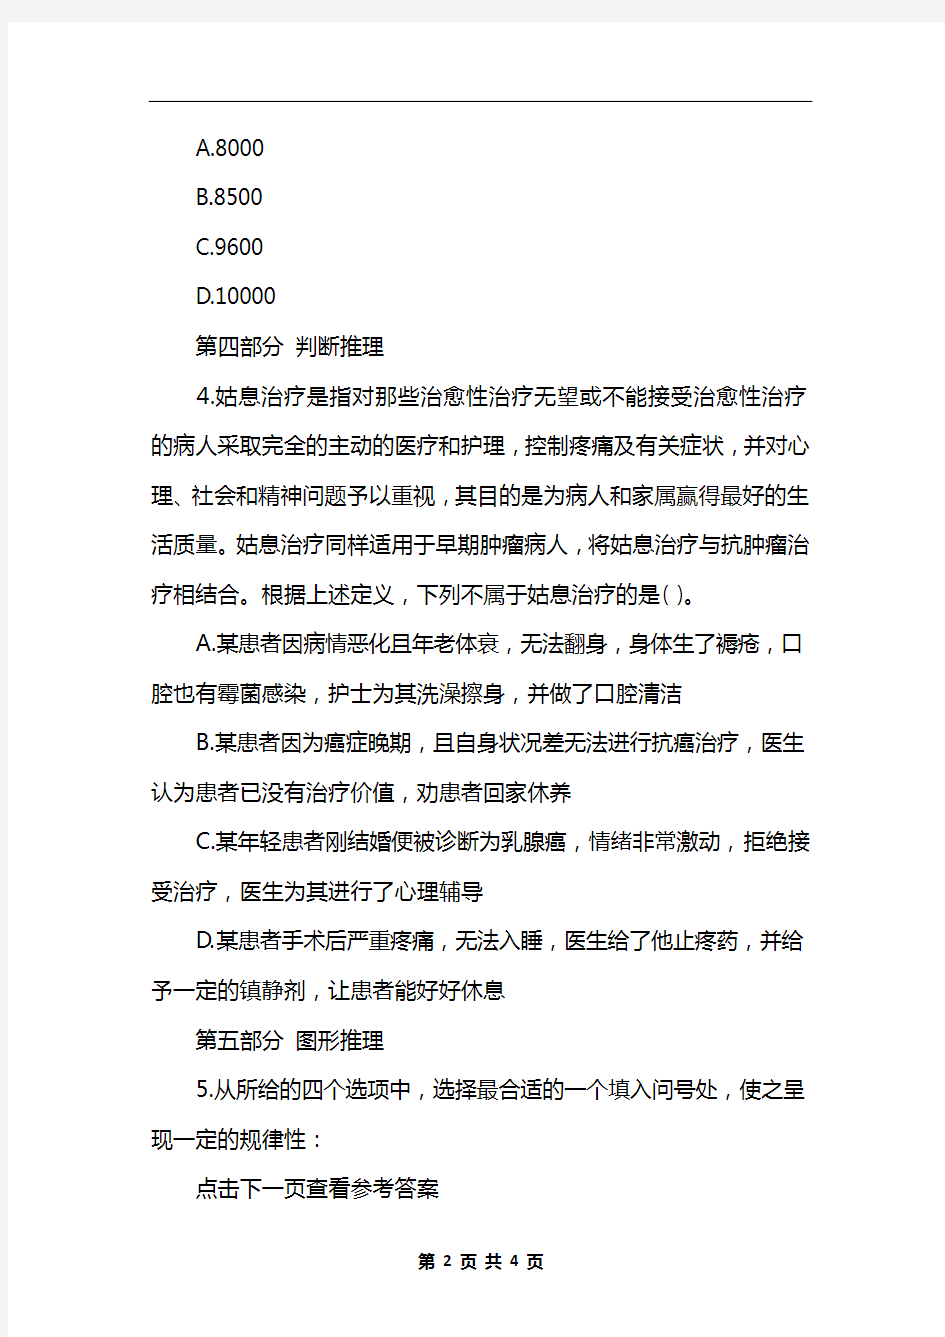 2020北京公务员考试行测全卷模拟试题(8.1)